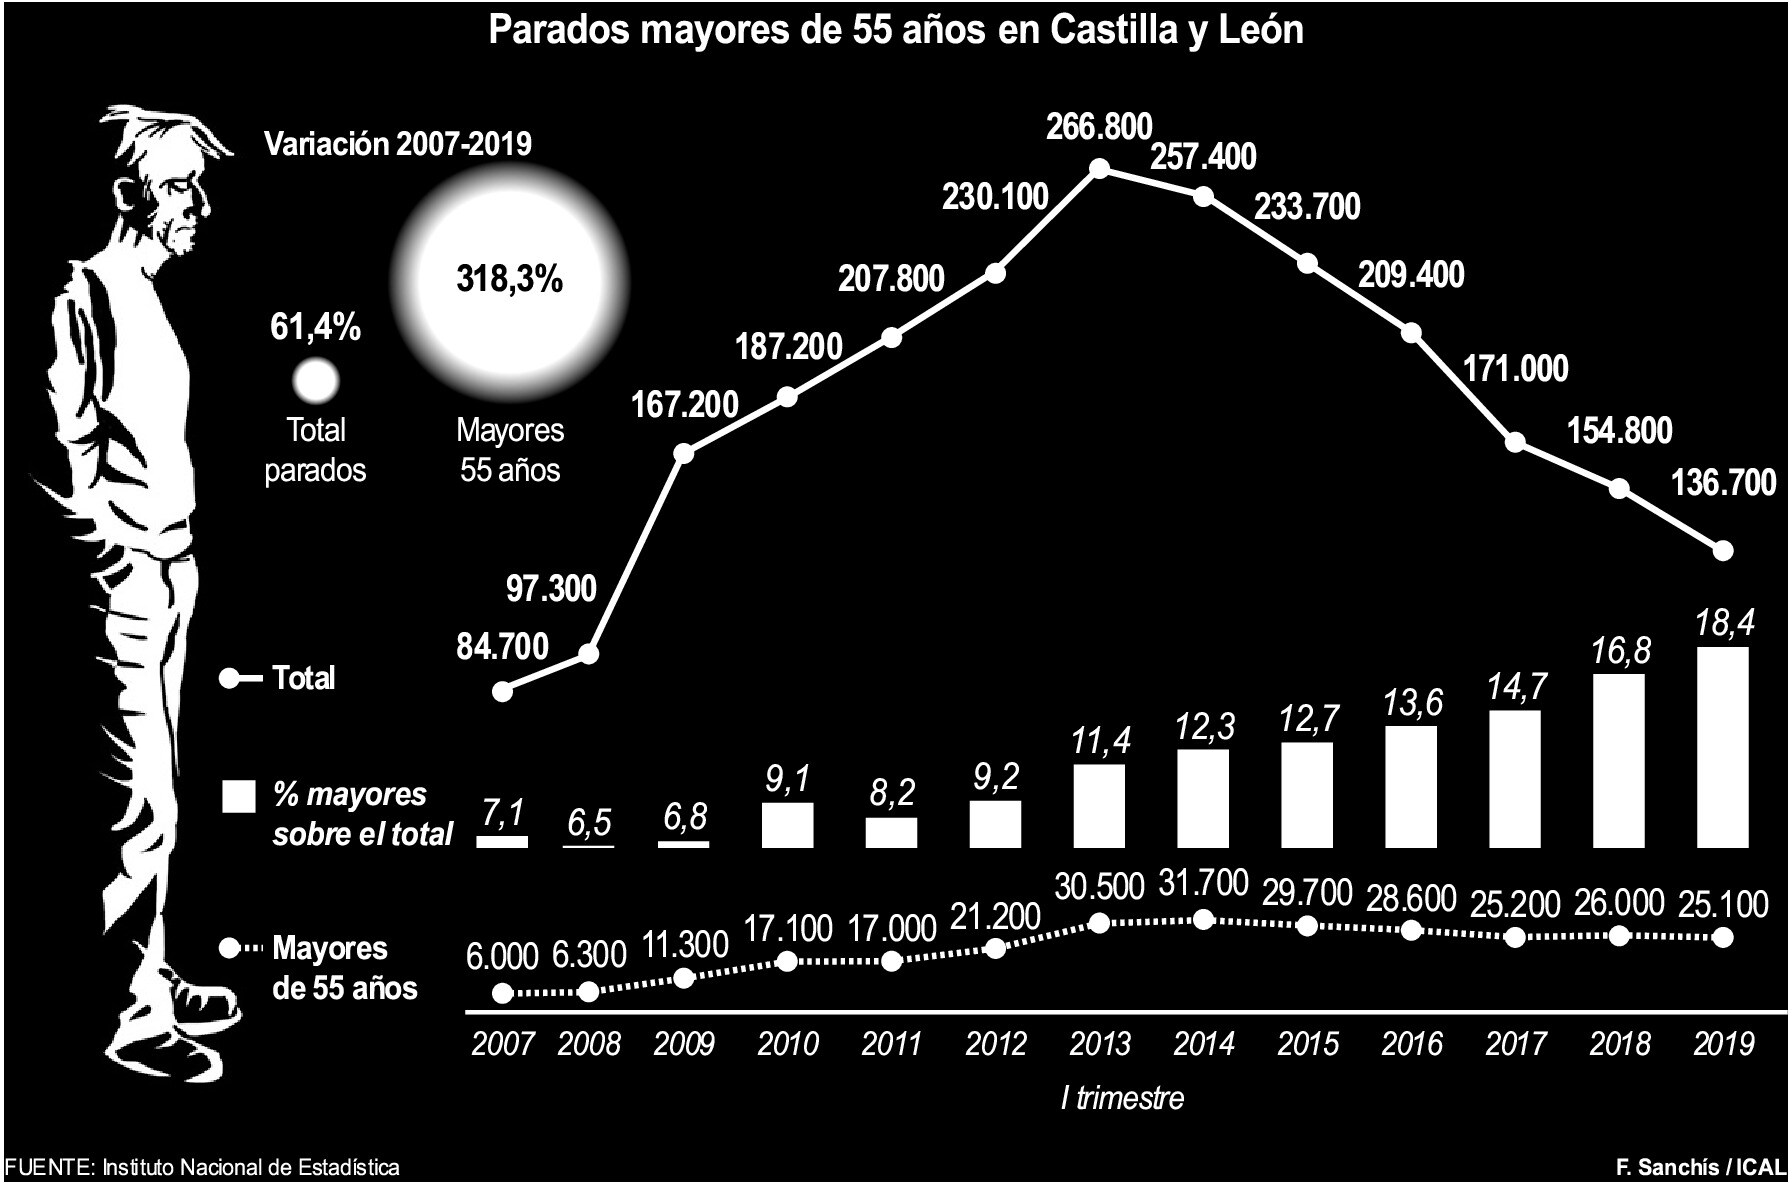 Parados mayores de 55 años en Castilla y León